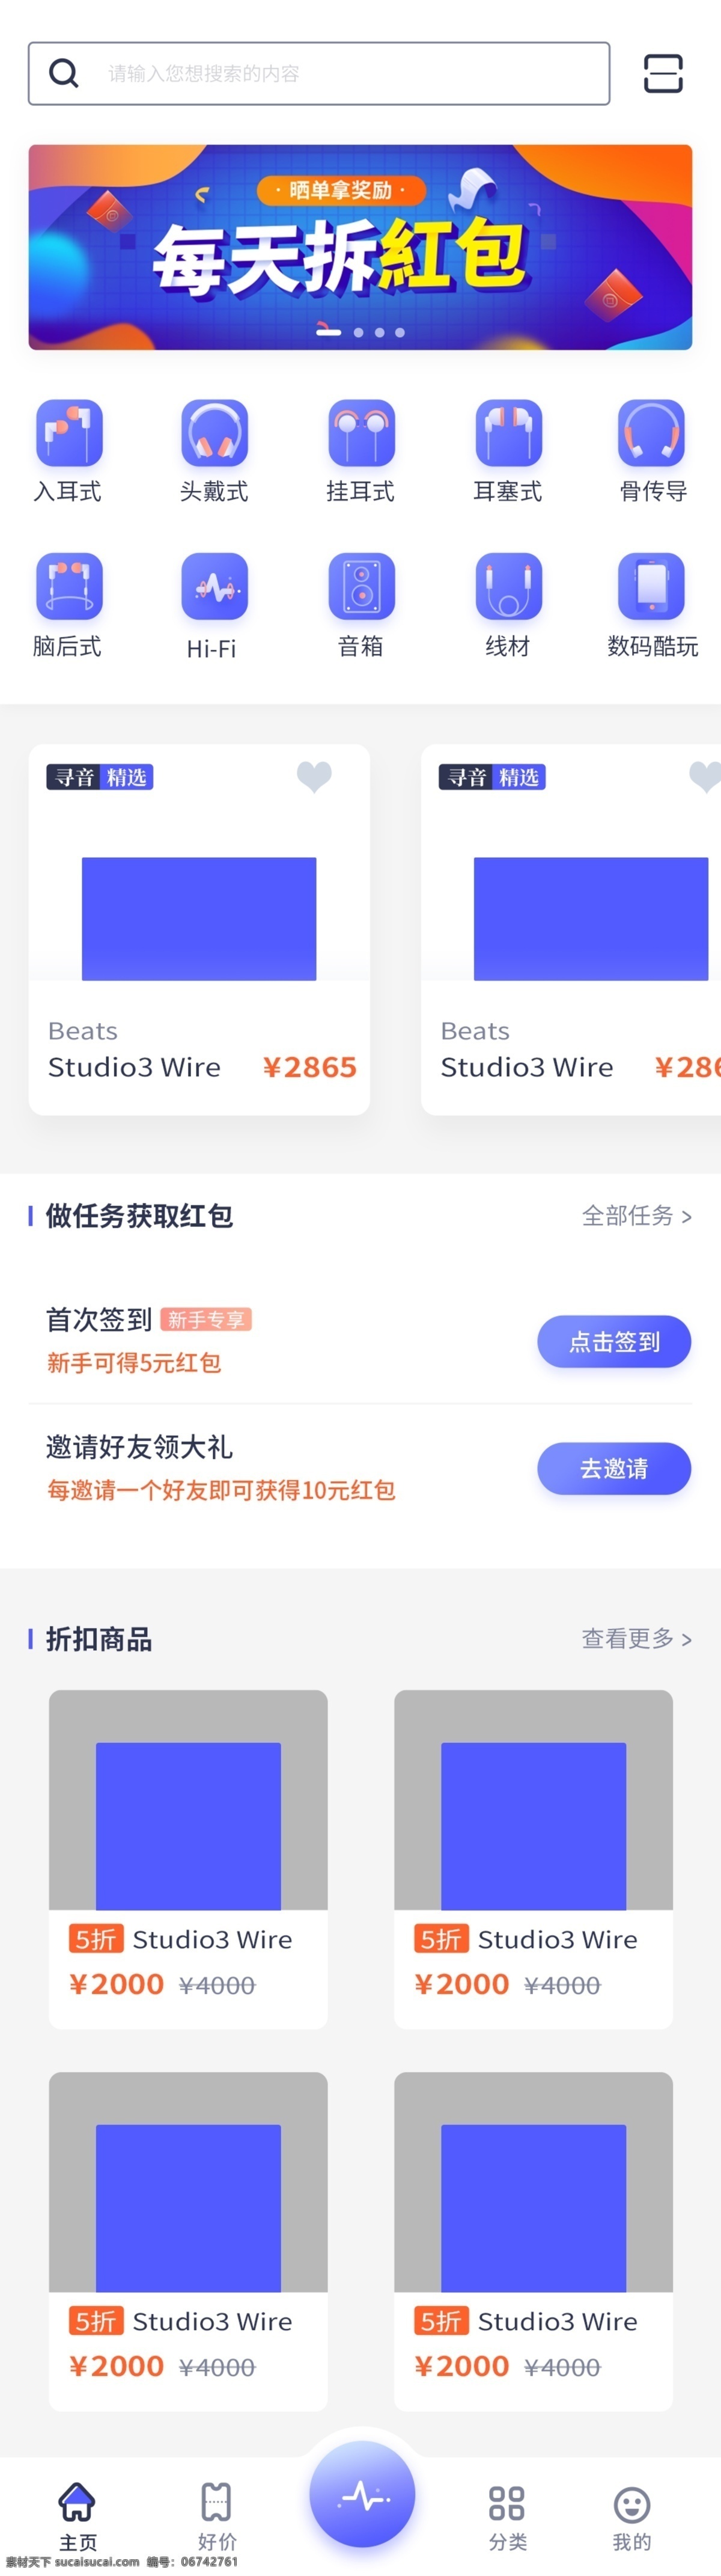 千 图 网 音乐 商城 app 蓝色 红包 ui 高级